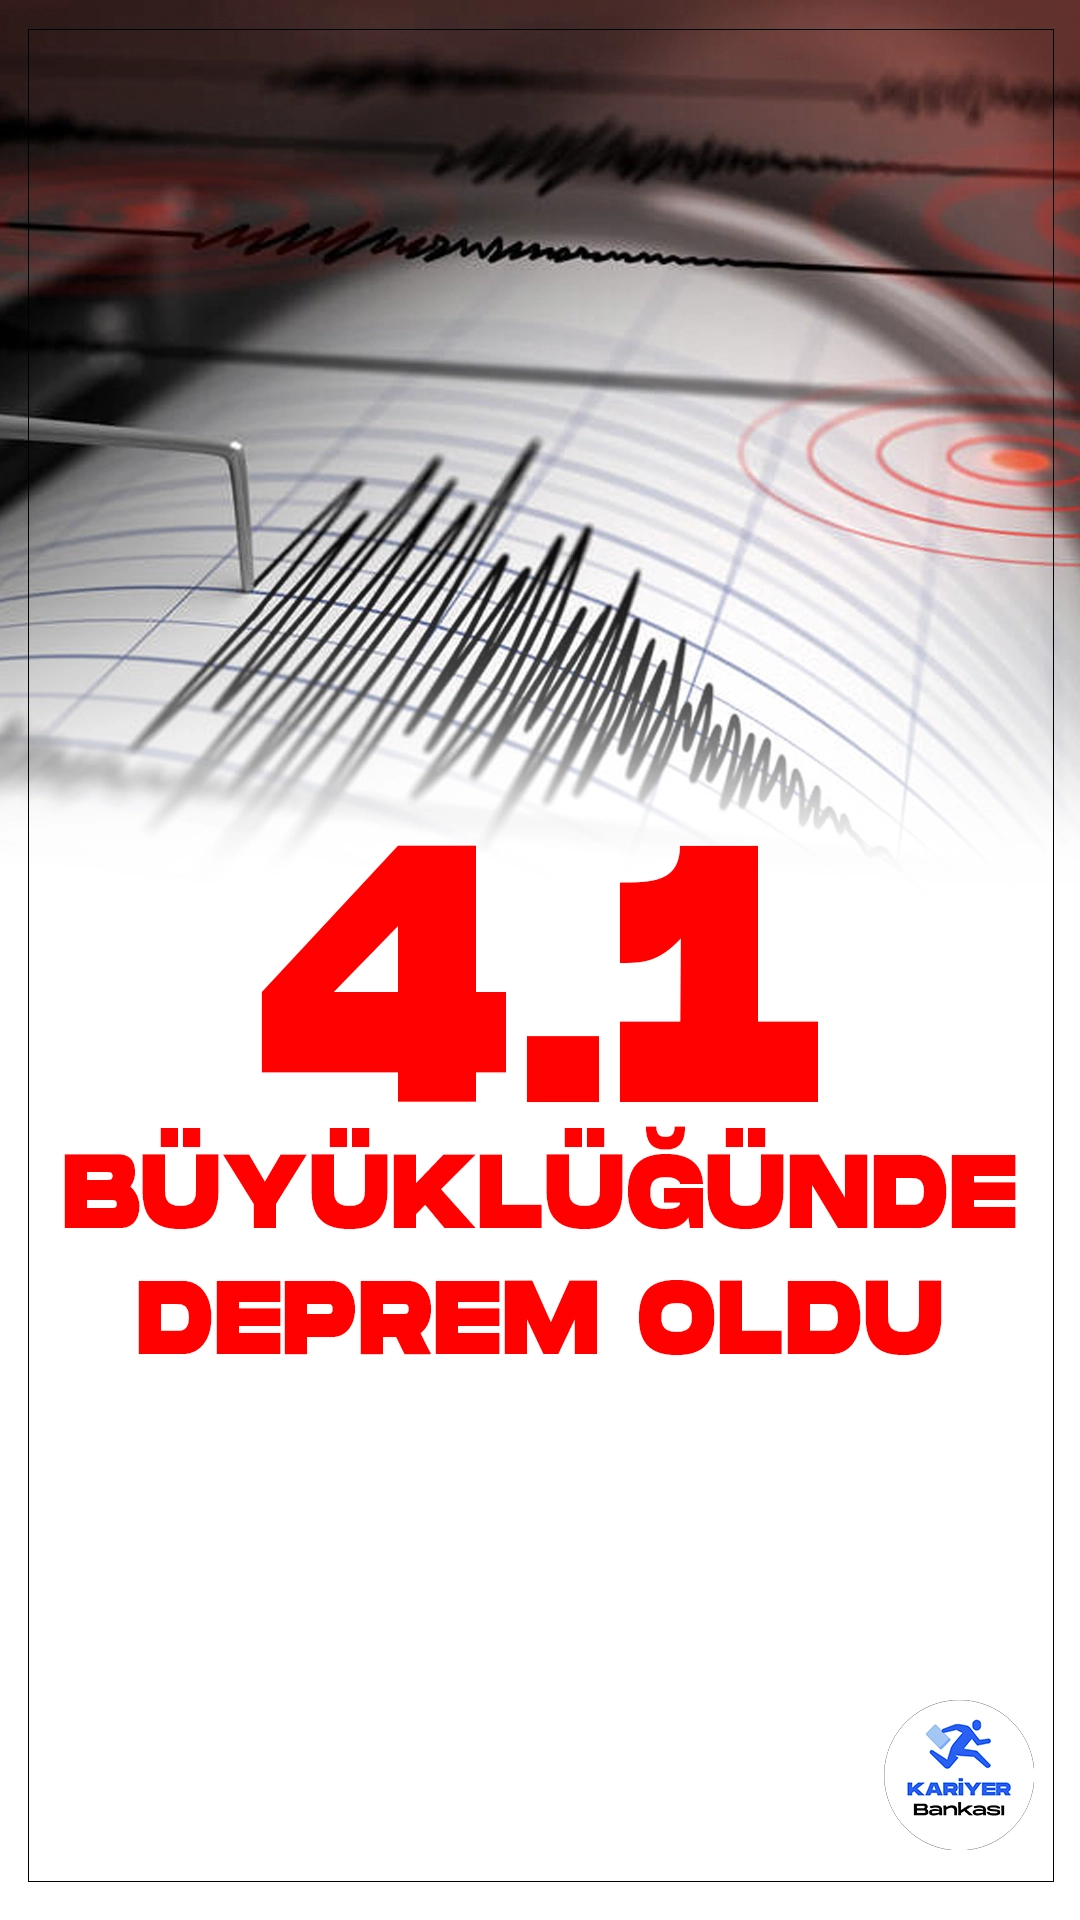 Bursa'da 4.1 Büyüklüğünde Deprem Meydana Geldi.İçişleri Bakanlığı Afet ve Acil Durum Yönetimi Başkanlığı Deprem Dairesi tarafından yayımlana son dakika verilerine göre, Bursa'nın Gemlik ilçesinde saat 15:14 sularında 4.1 büyüklüğünde deprem meydana geldi.